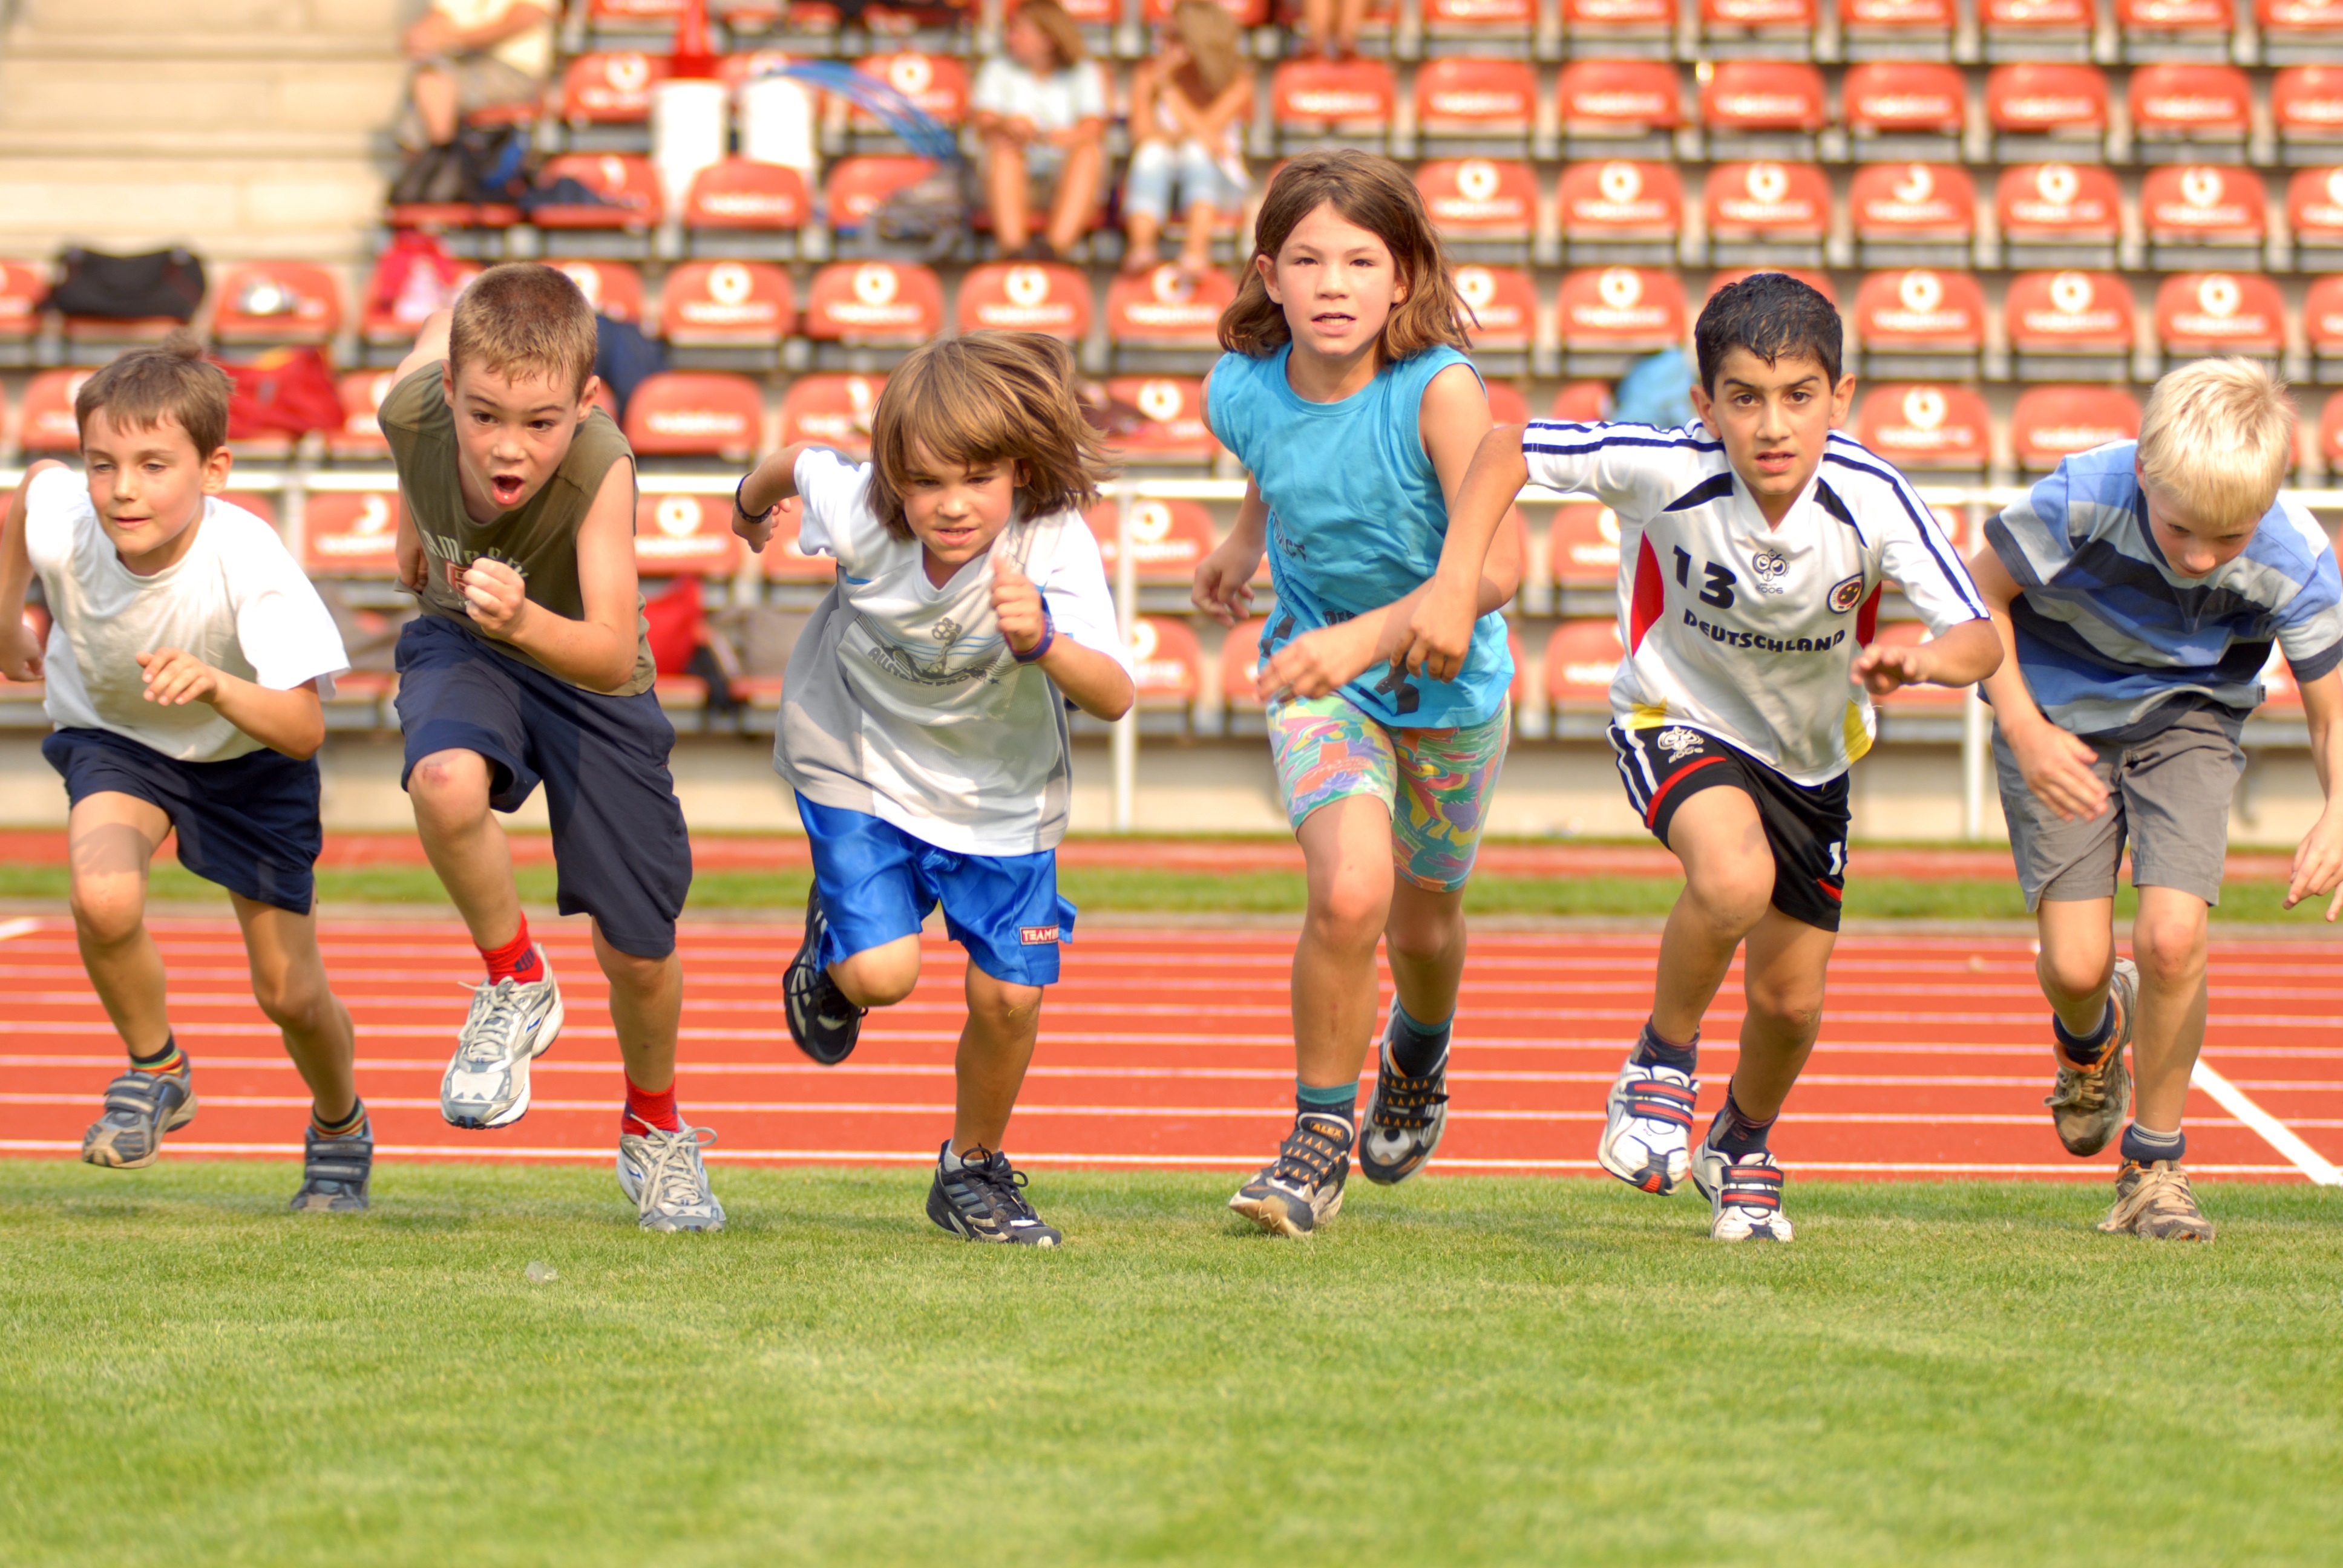 Kinder und Jugendliche sind eine wichtige Zielgruppe für die Sportvereinsarbeit.